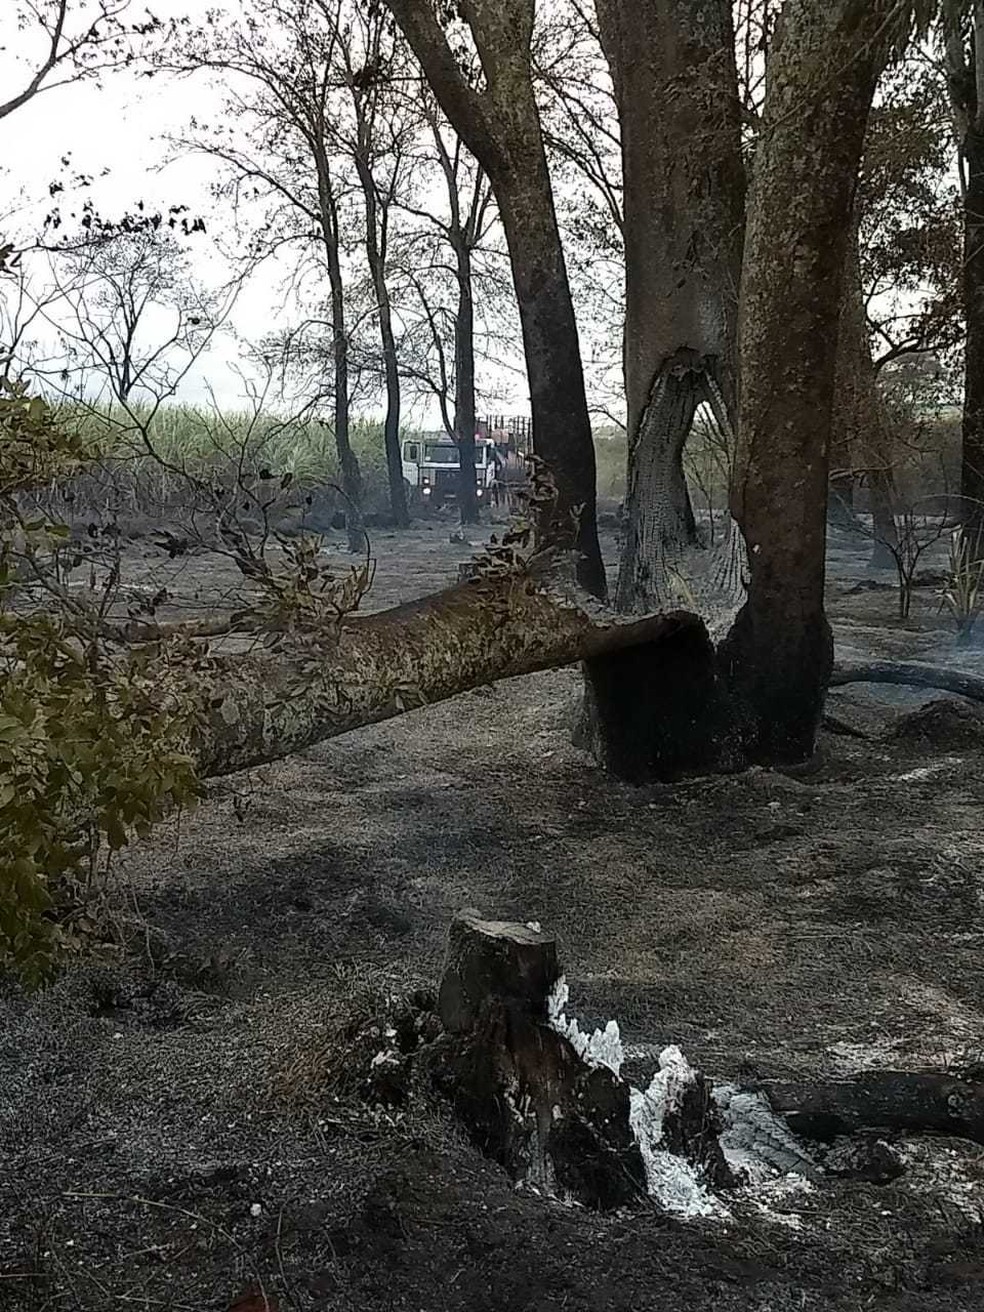 DenÃºncia diz que funcionÃ¡rios Ã© que atearam fogo no local em MS (Foto: PMA/DivulgaÃ§Ã£o)